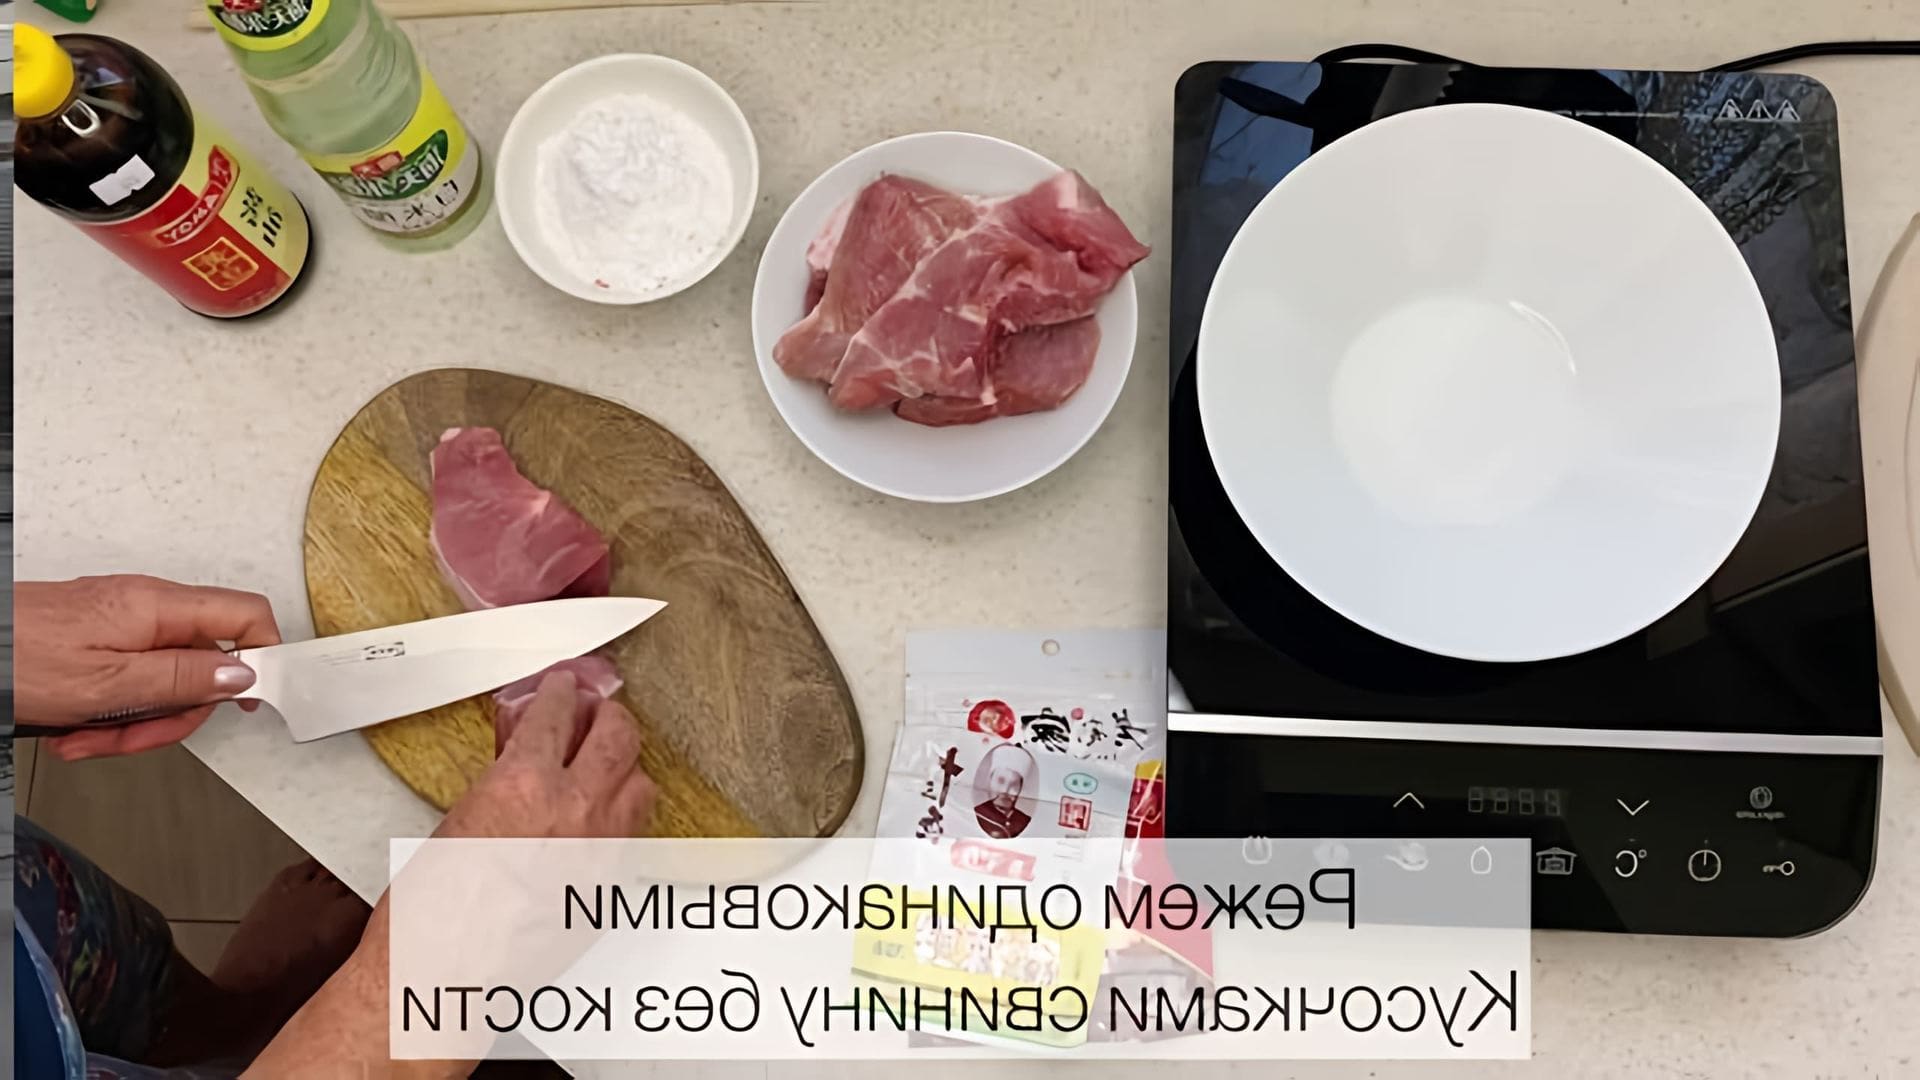 Рецепт ГАБАДЖОУ - это видео-ролик, который демонстрирует процесс приготовления вкусного и полезного блюда